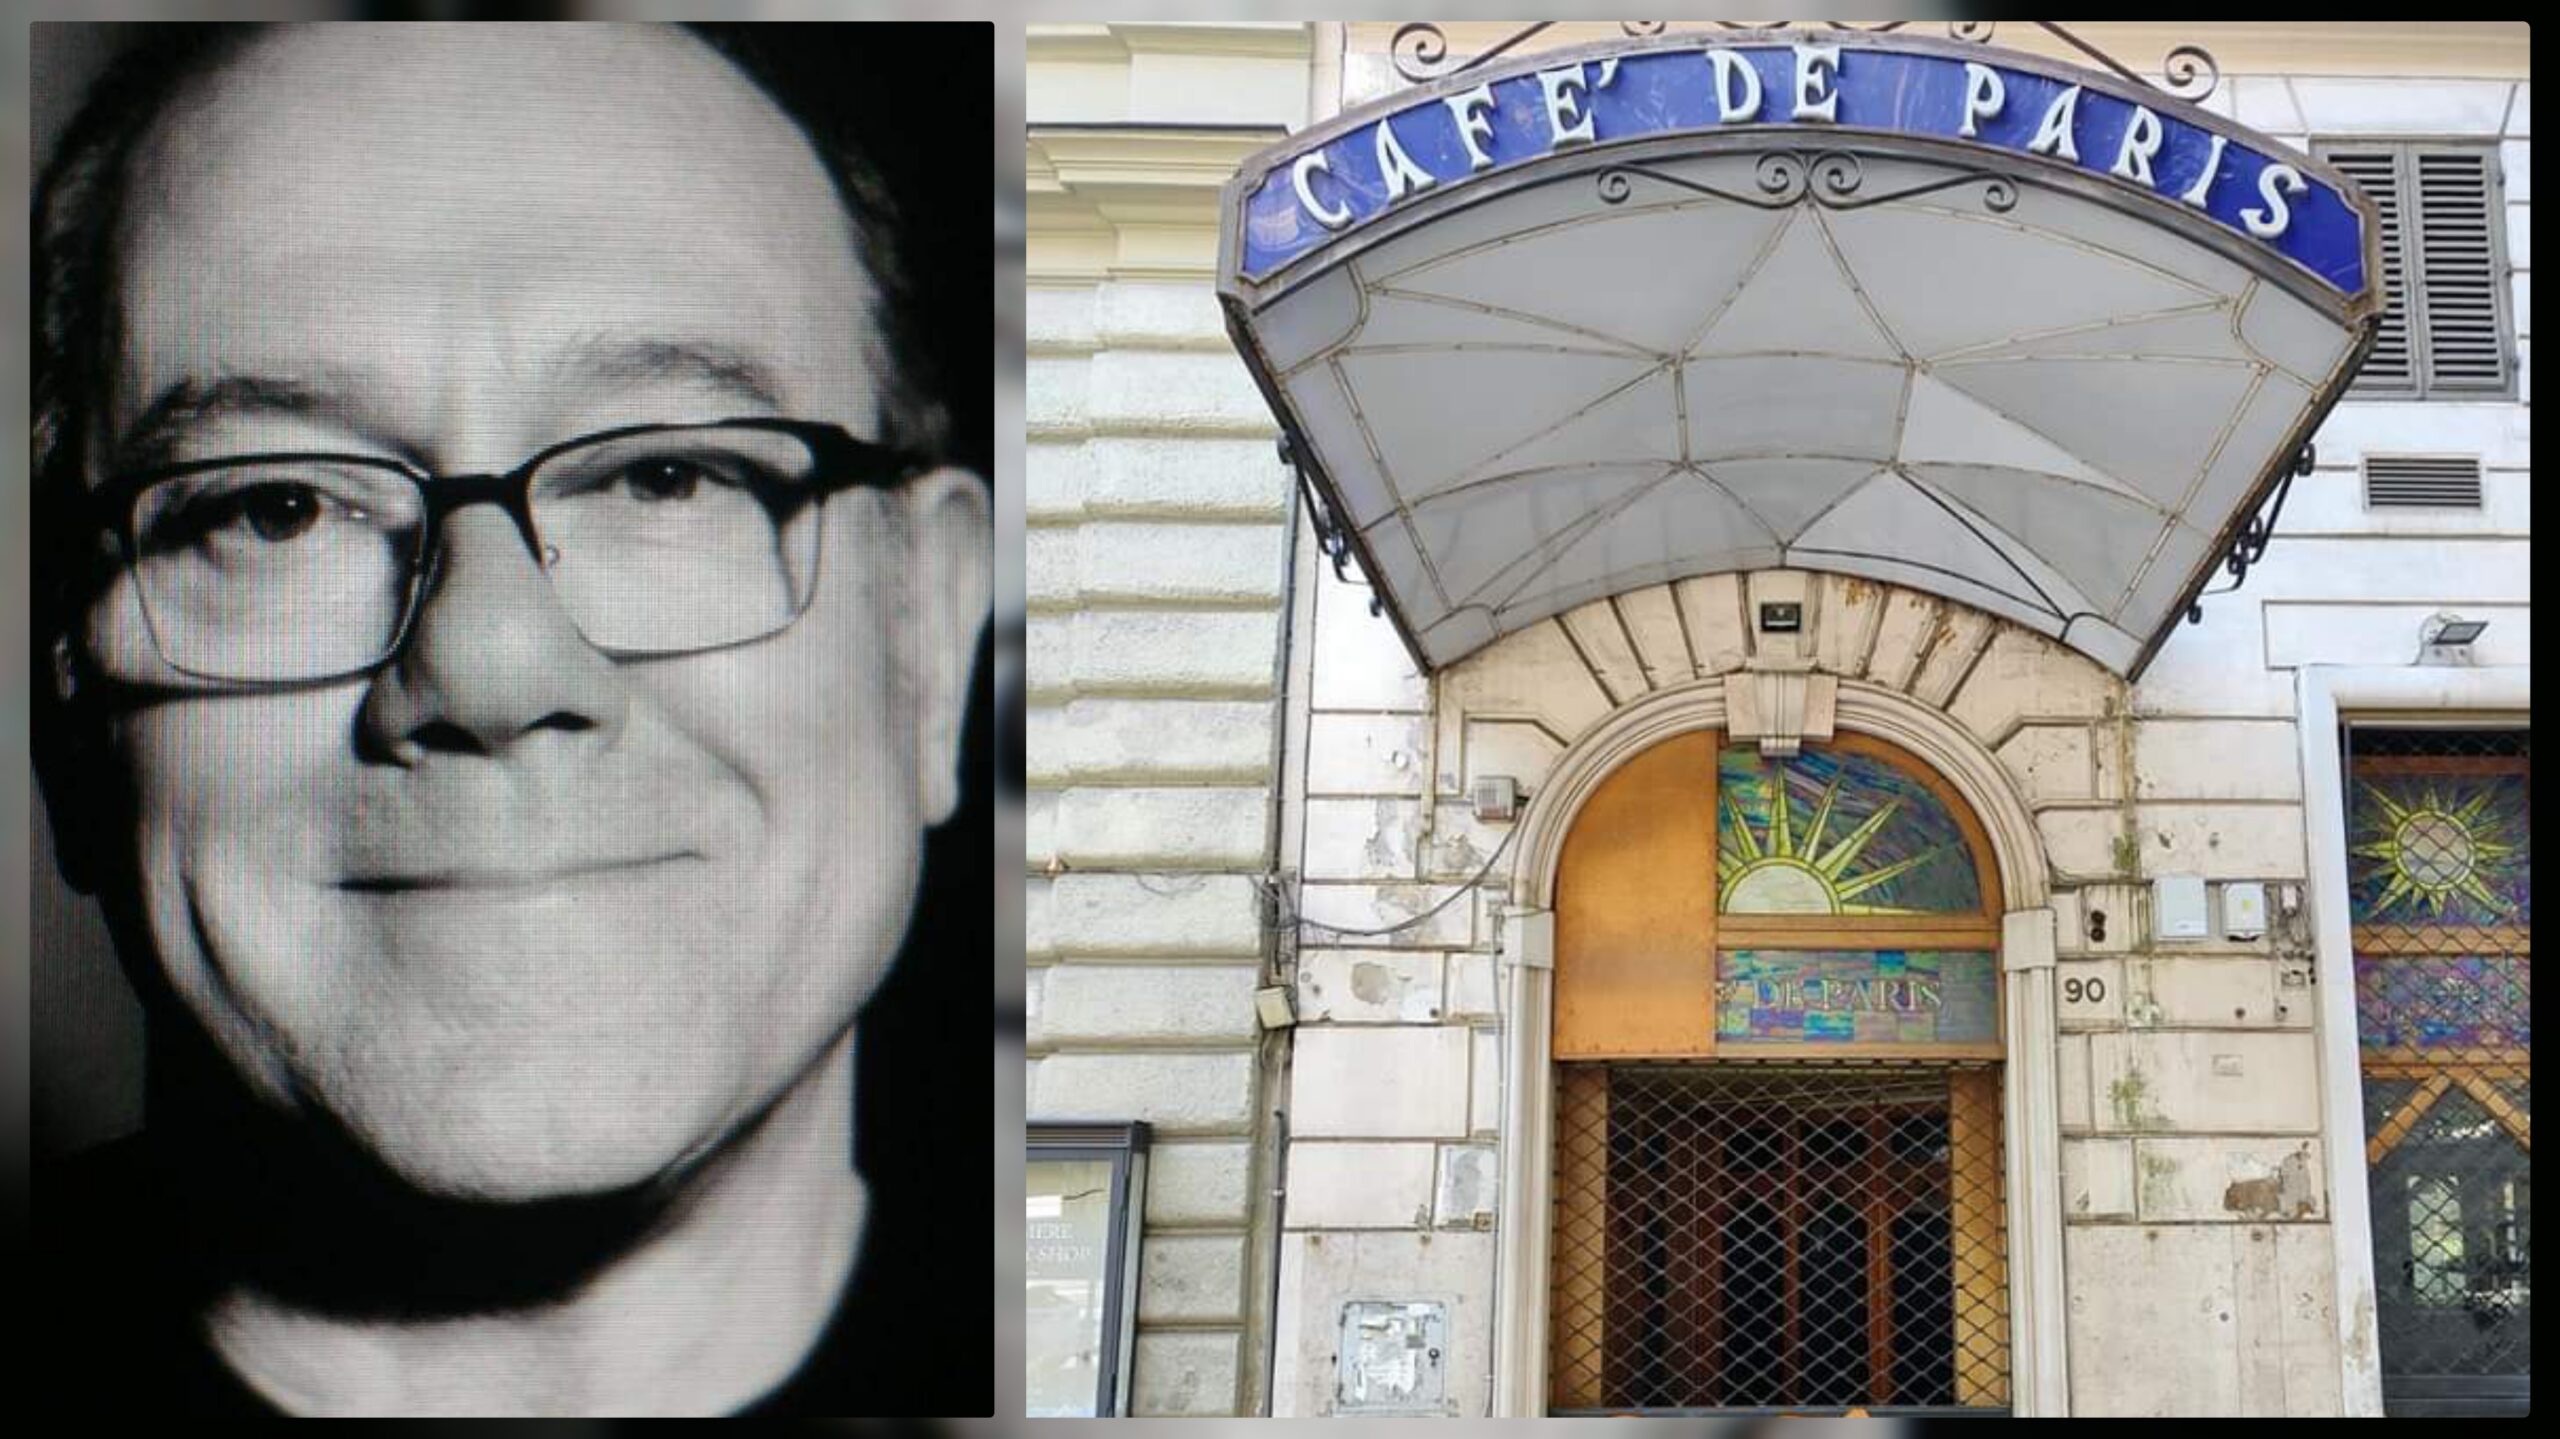 Carlo Verdone ricorda gli anni della Dolce Vita di fronte la serranda abbassata del Café de Paris: "C'era vita, ci si divertiva"